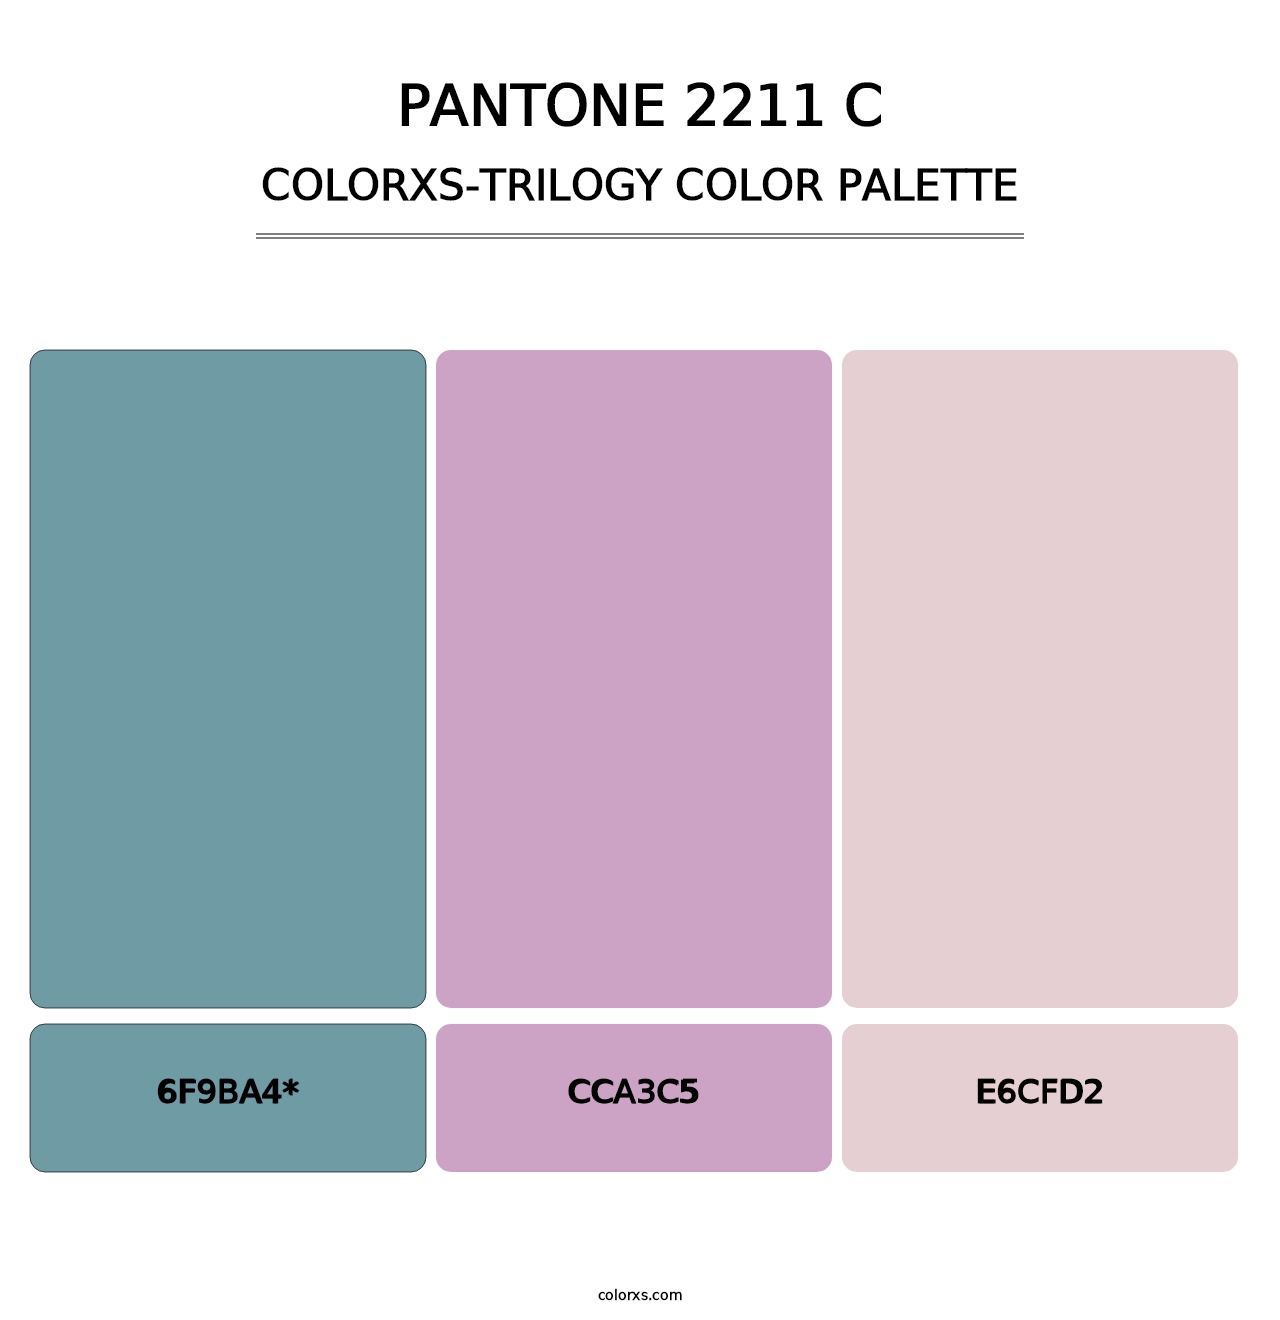 PANTONE 2211 C - Colorxs Trilogy Palette